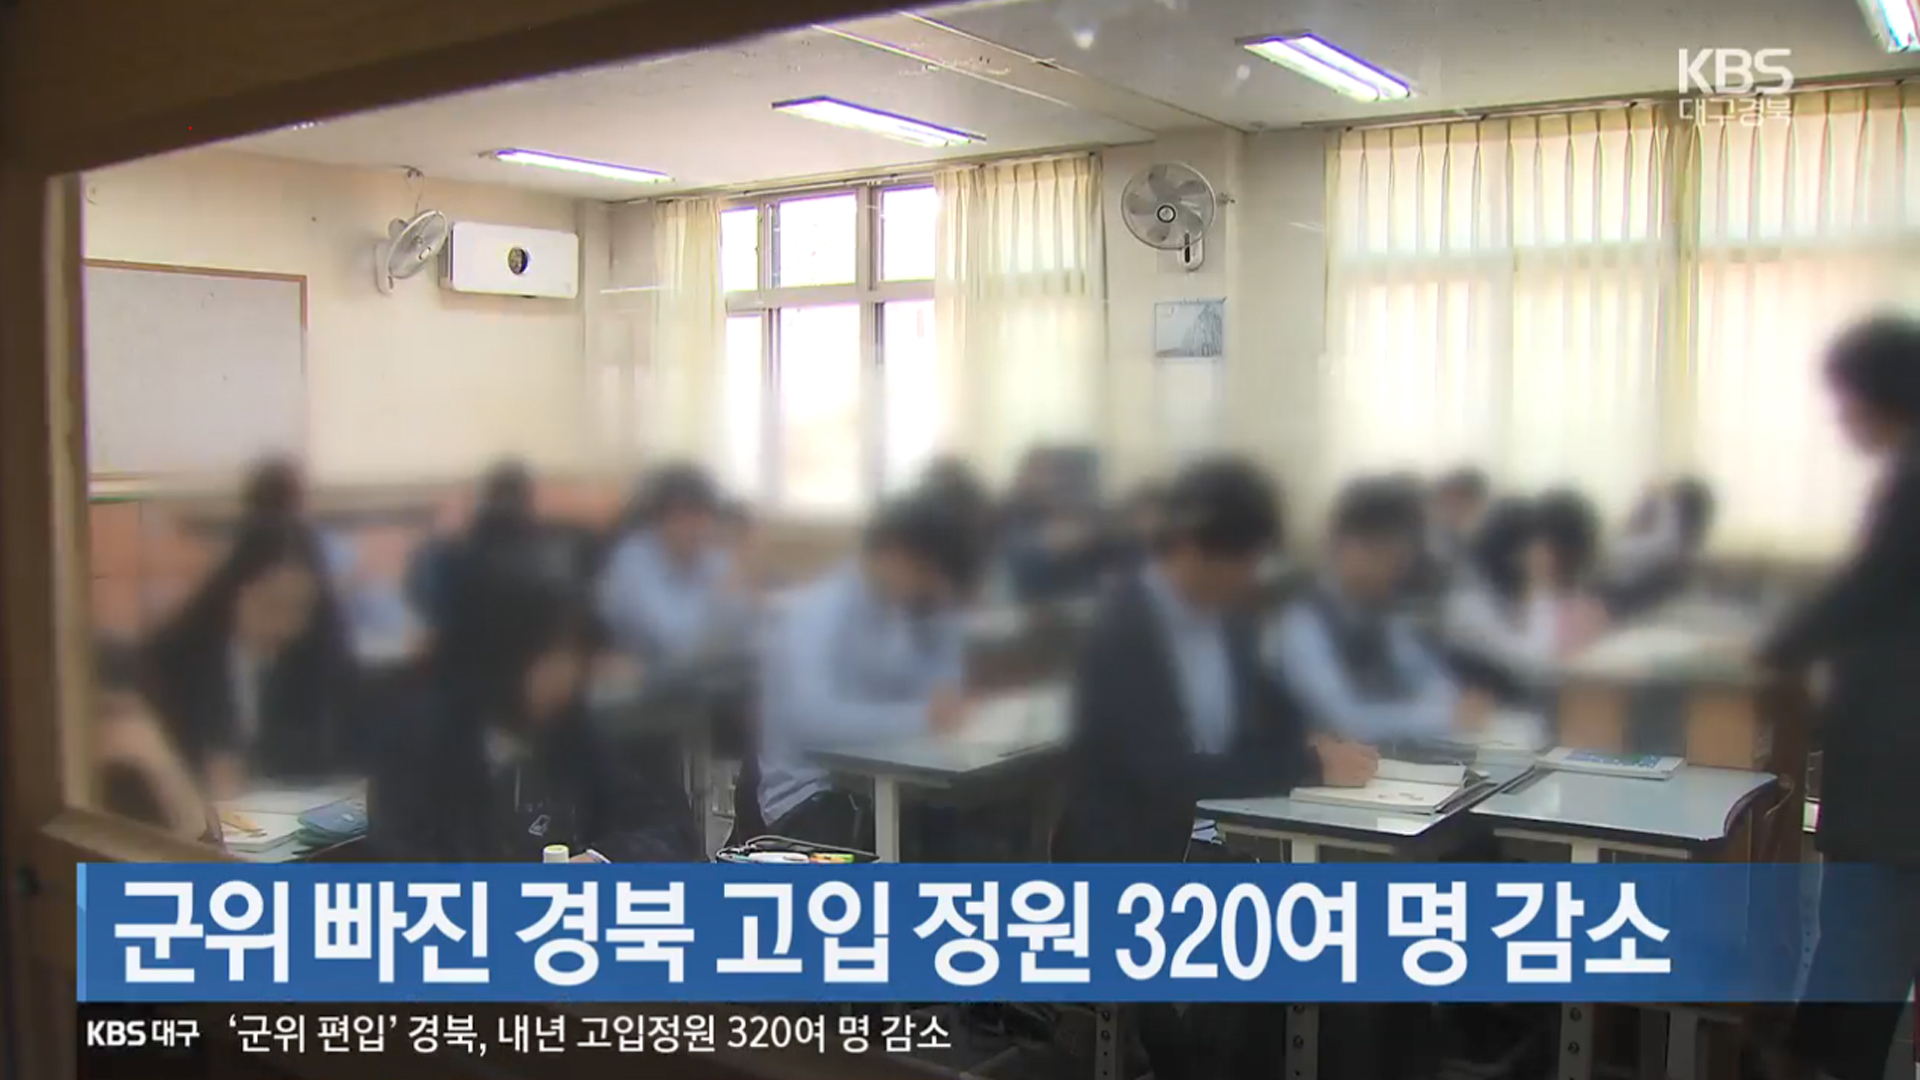 군위 빠진 경북 고입 정원 320여 명 감소